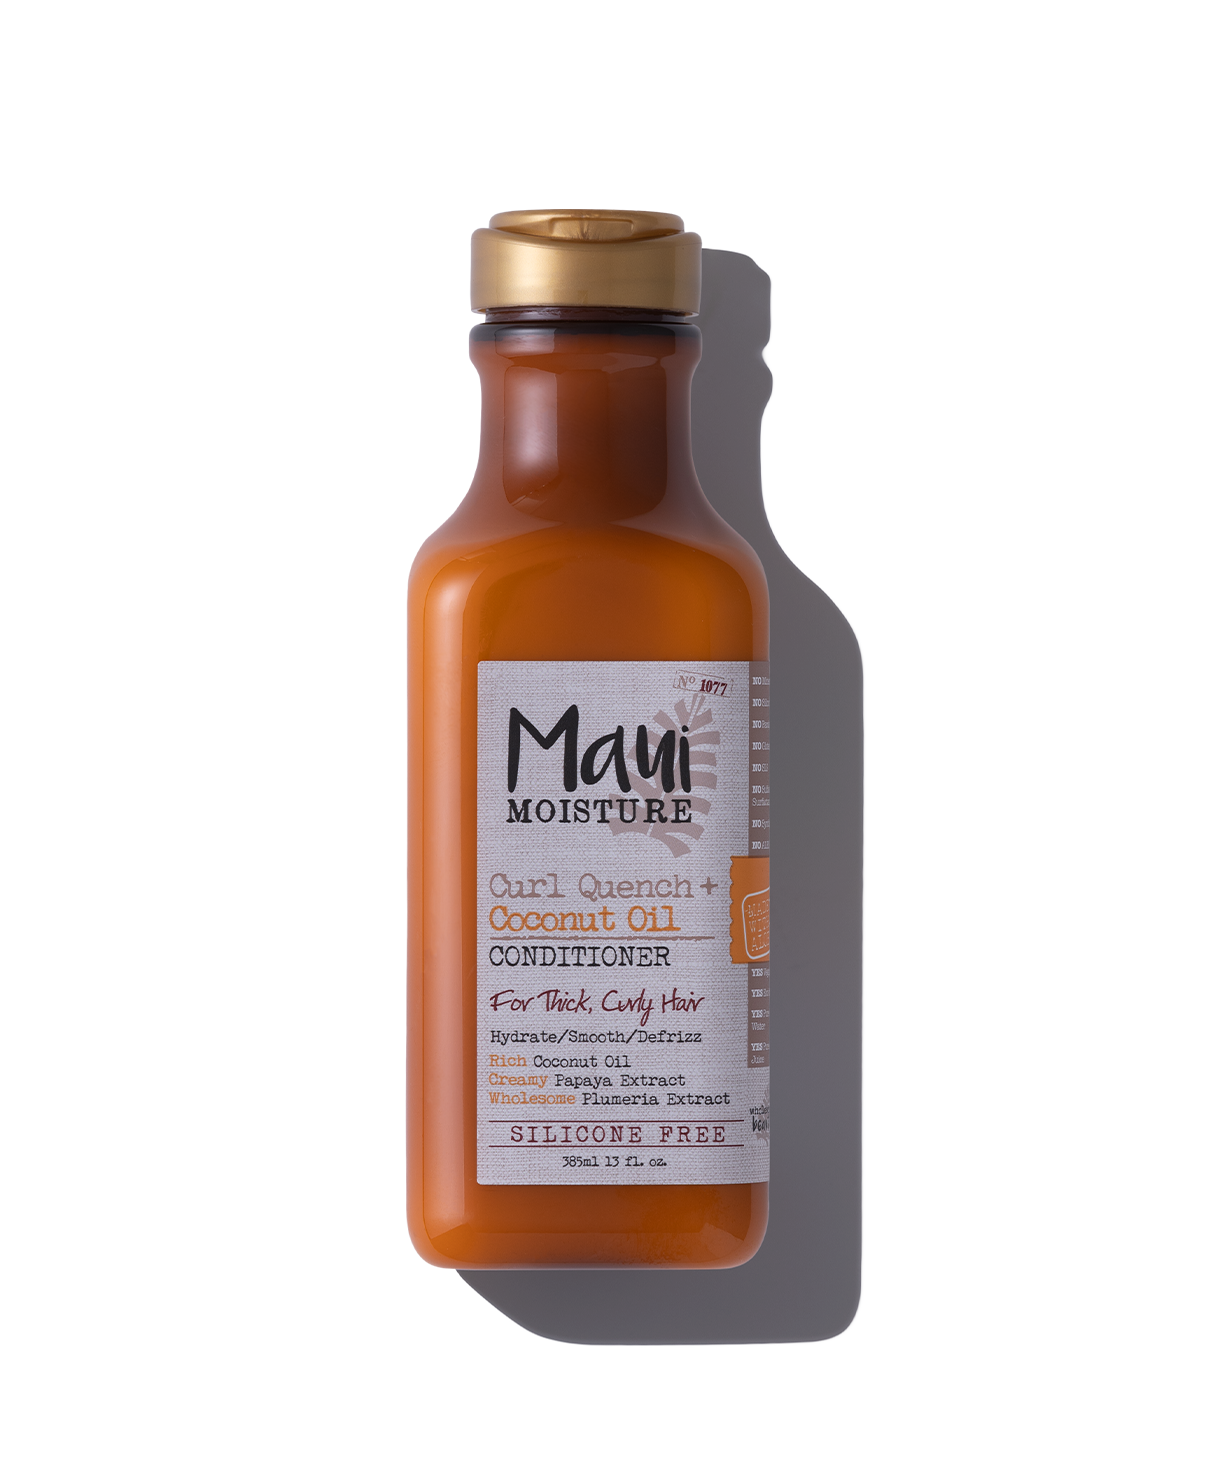 Maui Moisture Curl Quench + Coconut Oil Conditioner - 385 ml